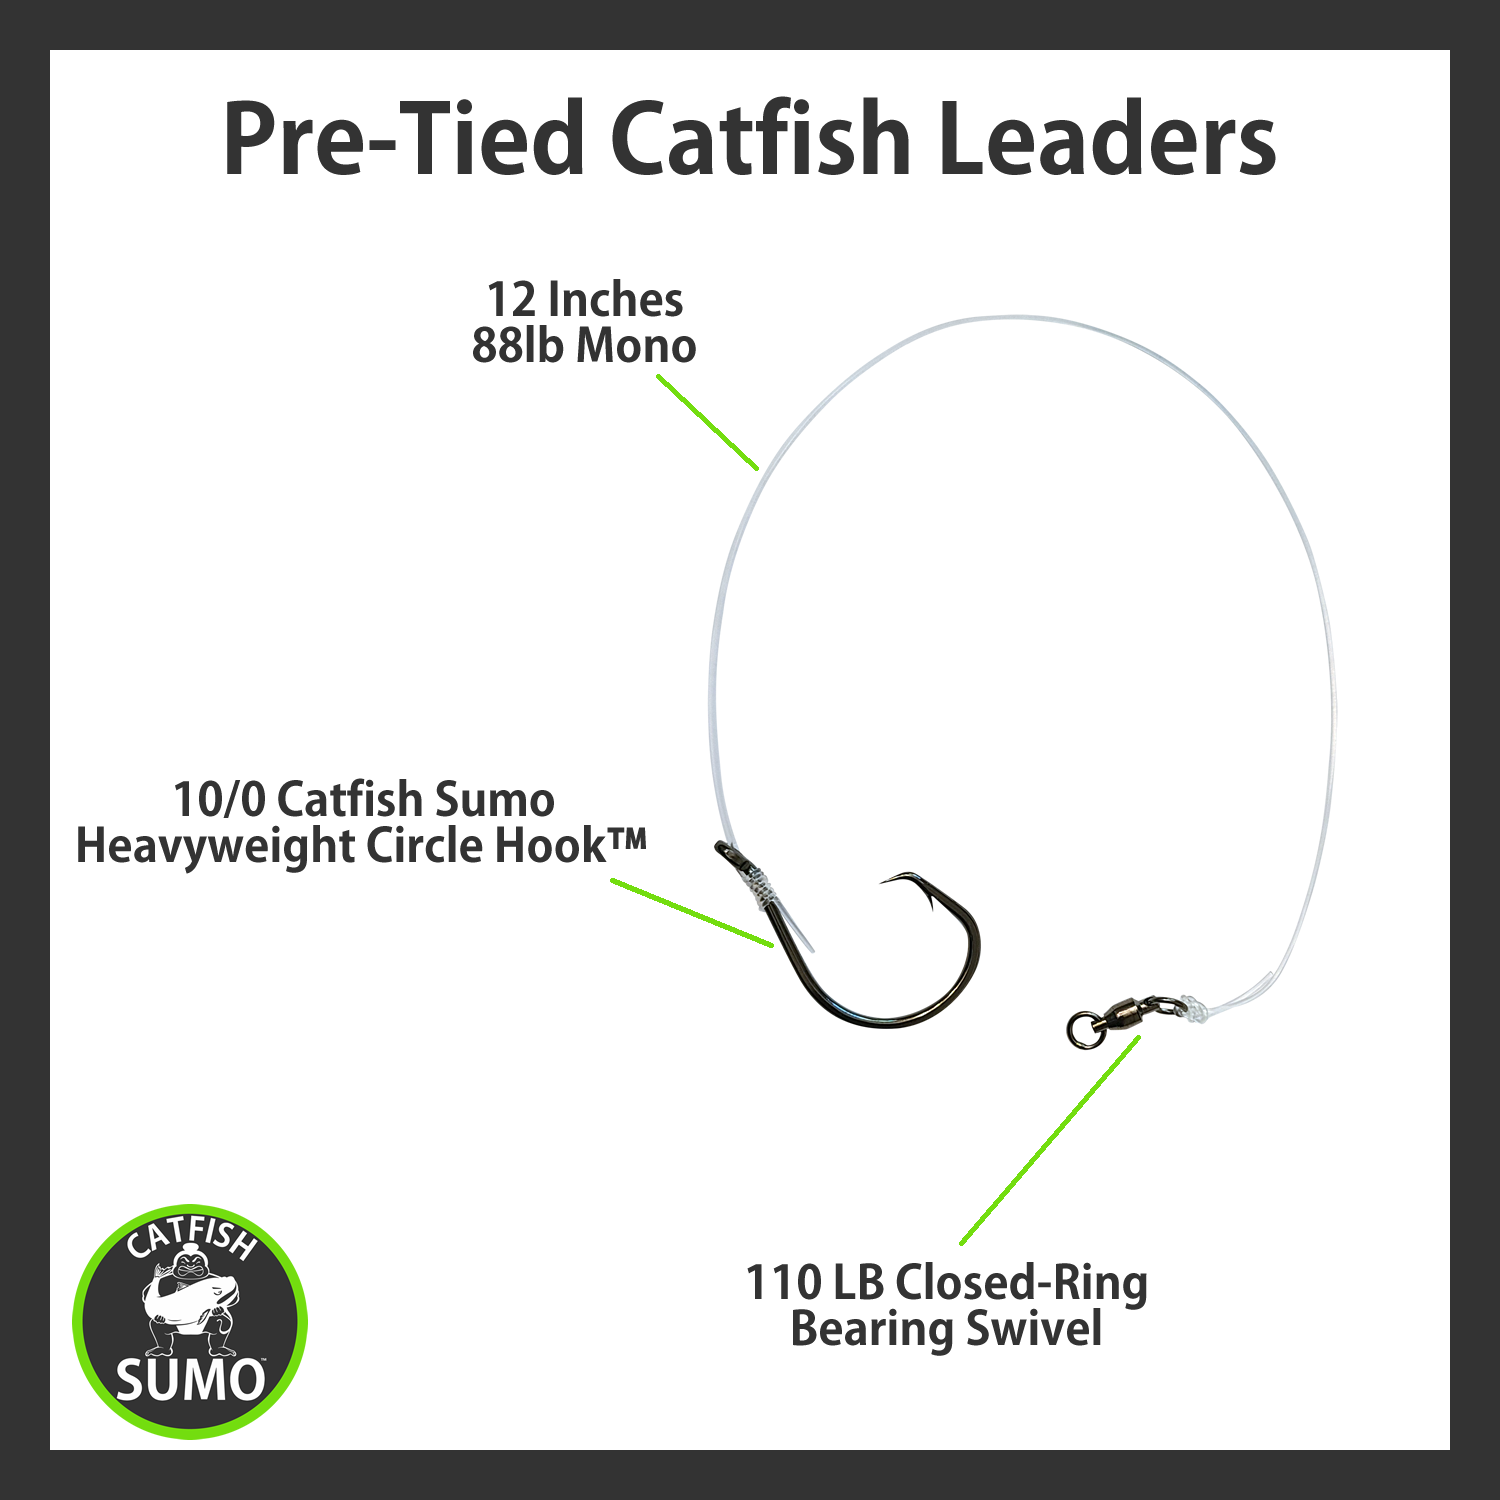 Best catfish rigs – Catfish Sumo